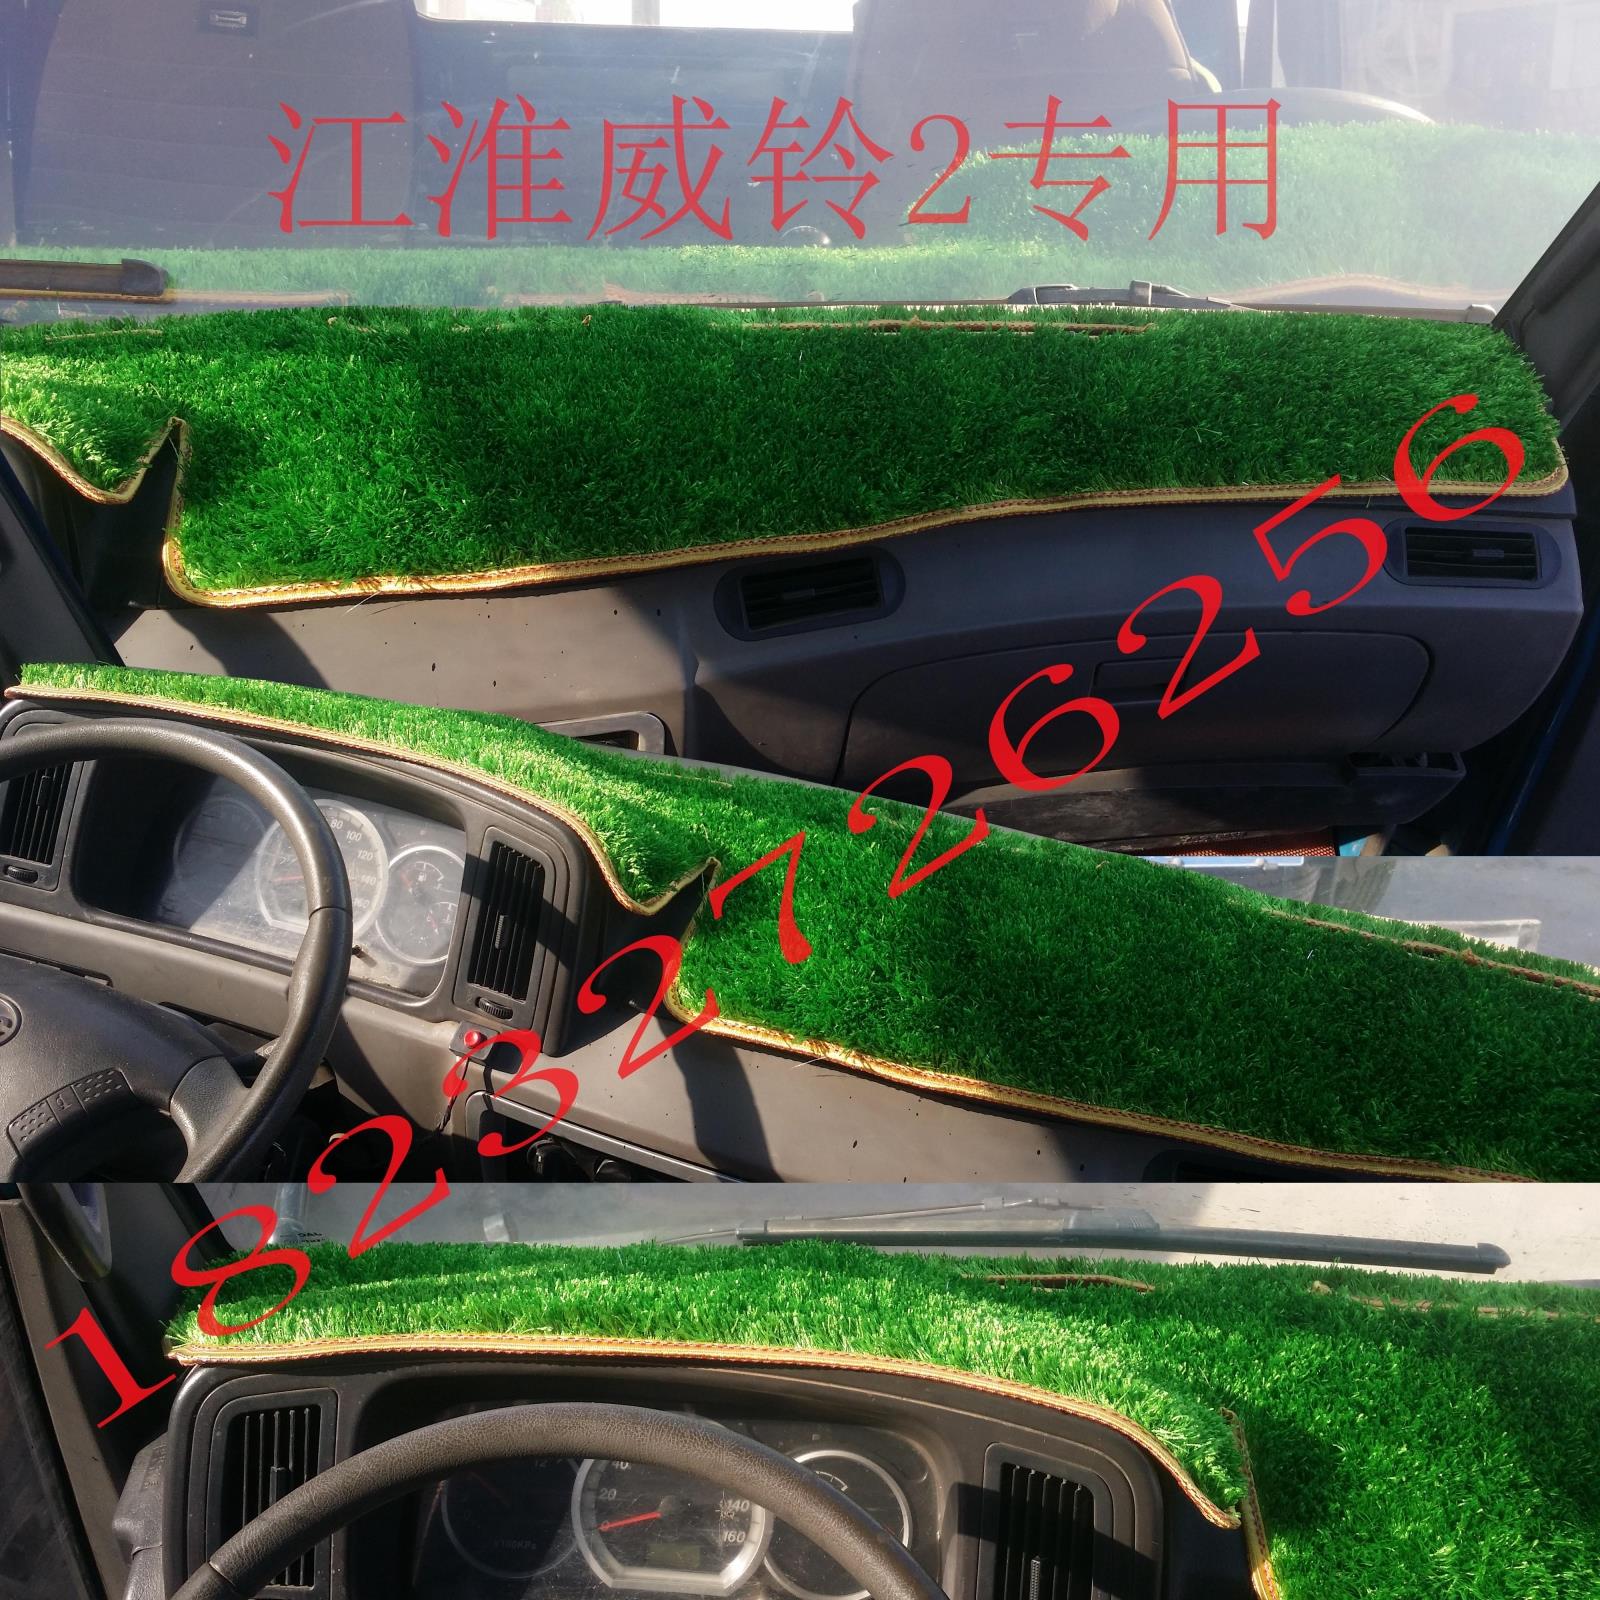 福田奥铃TX货车仪表台避光垫CTX工作台绿色草坪垫CTS中控台遮阳垫